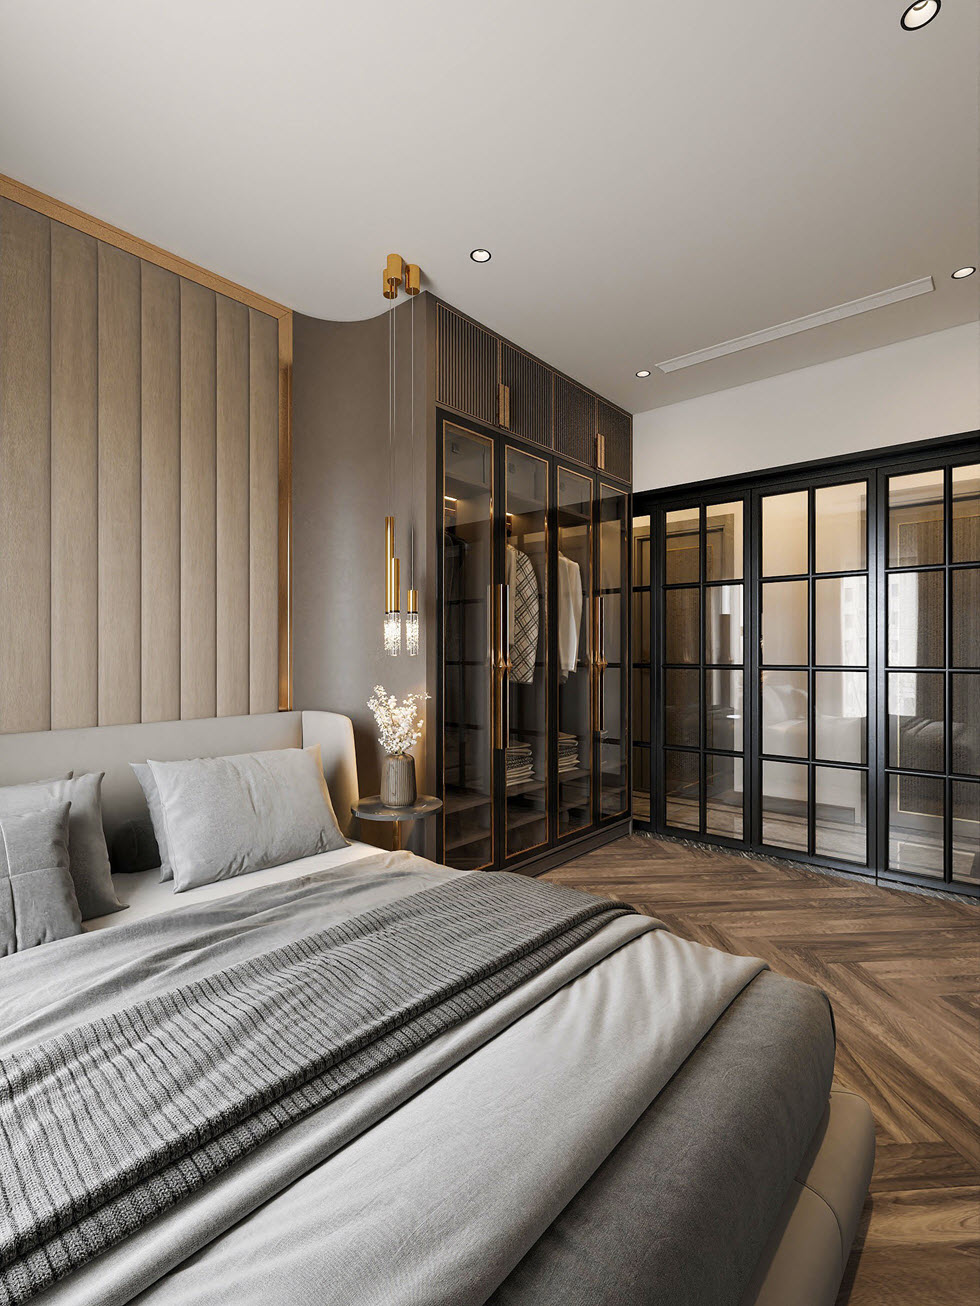 Tủ quần áo tại các phòng ngủ được thiết kế tương tự nhau với cửa kính trong suốt, bo viền khung đen sang trọng.